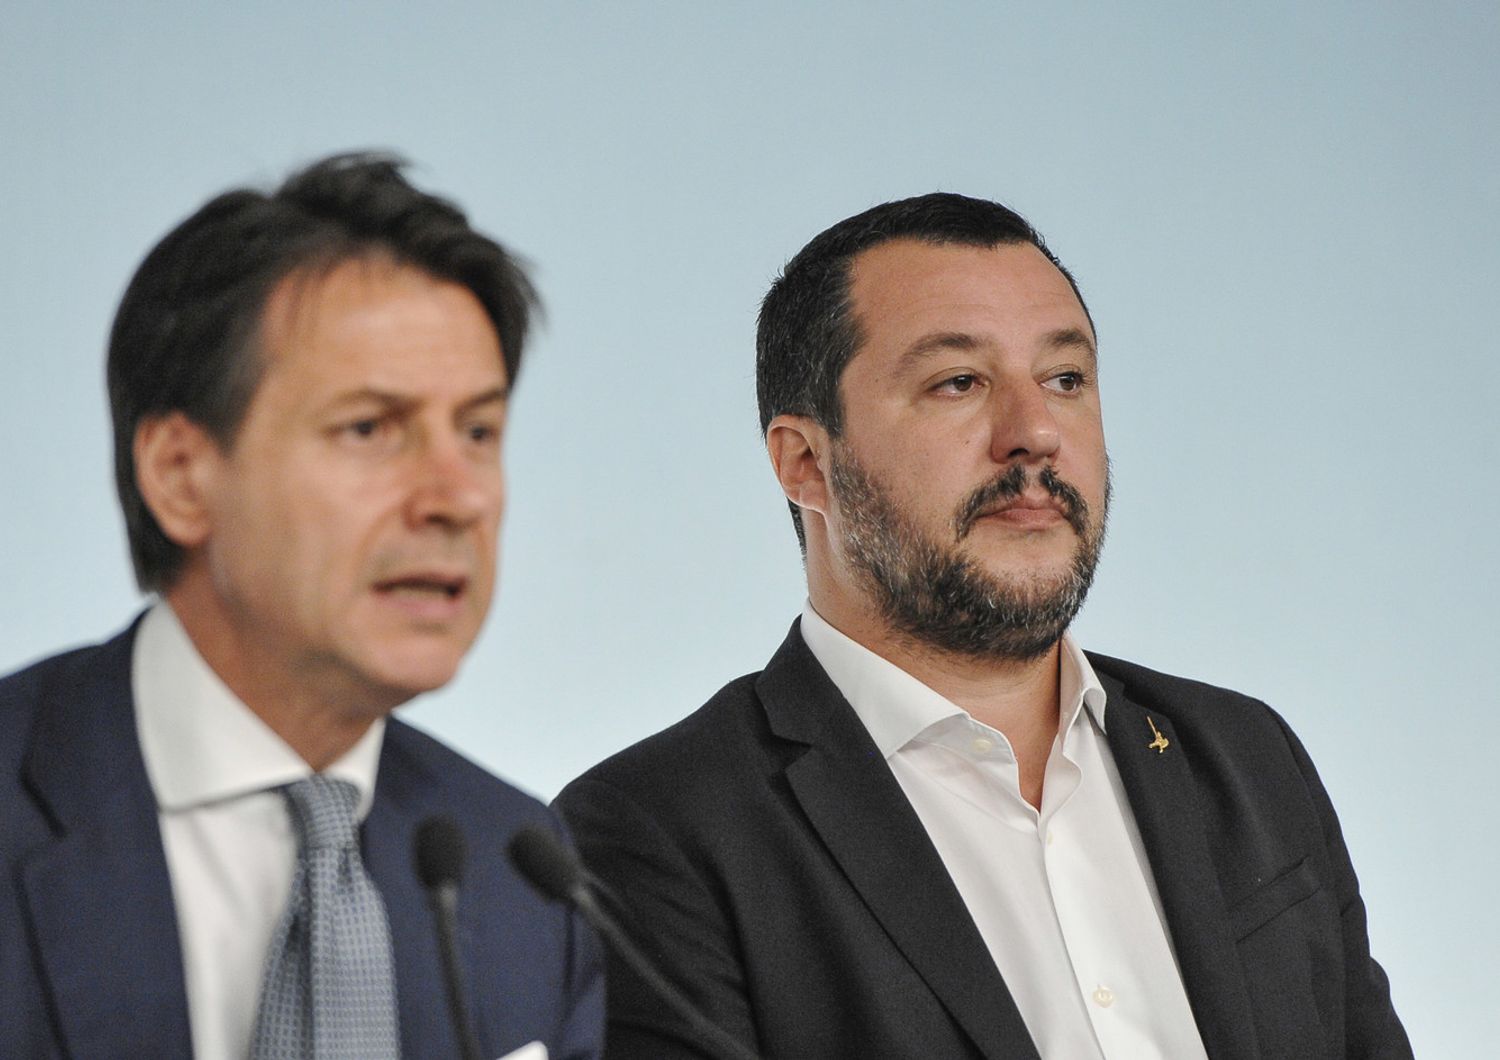 &nbsp;Giuseppe Conte e Matteo Salvini